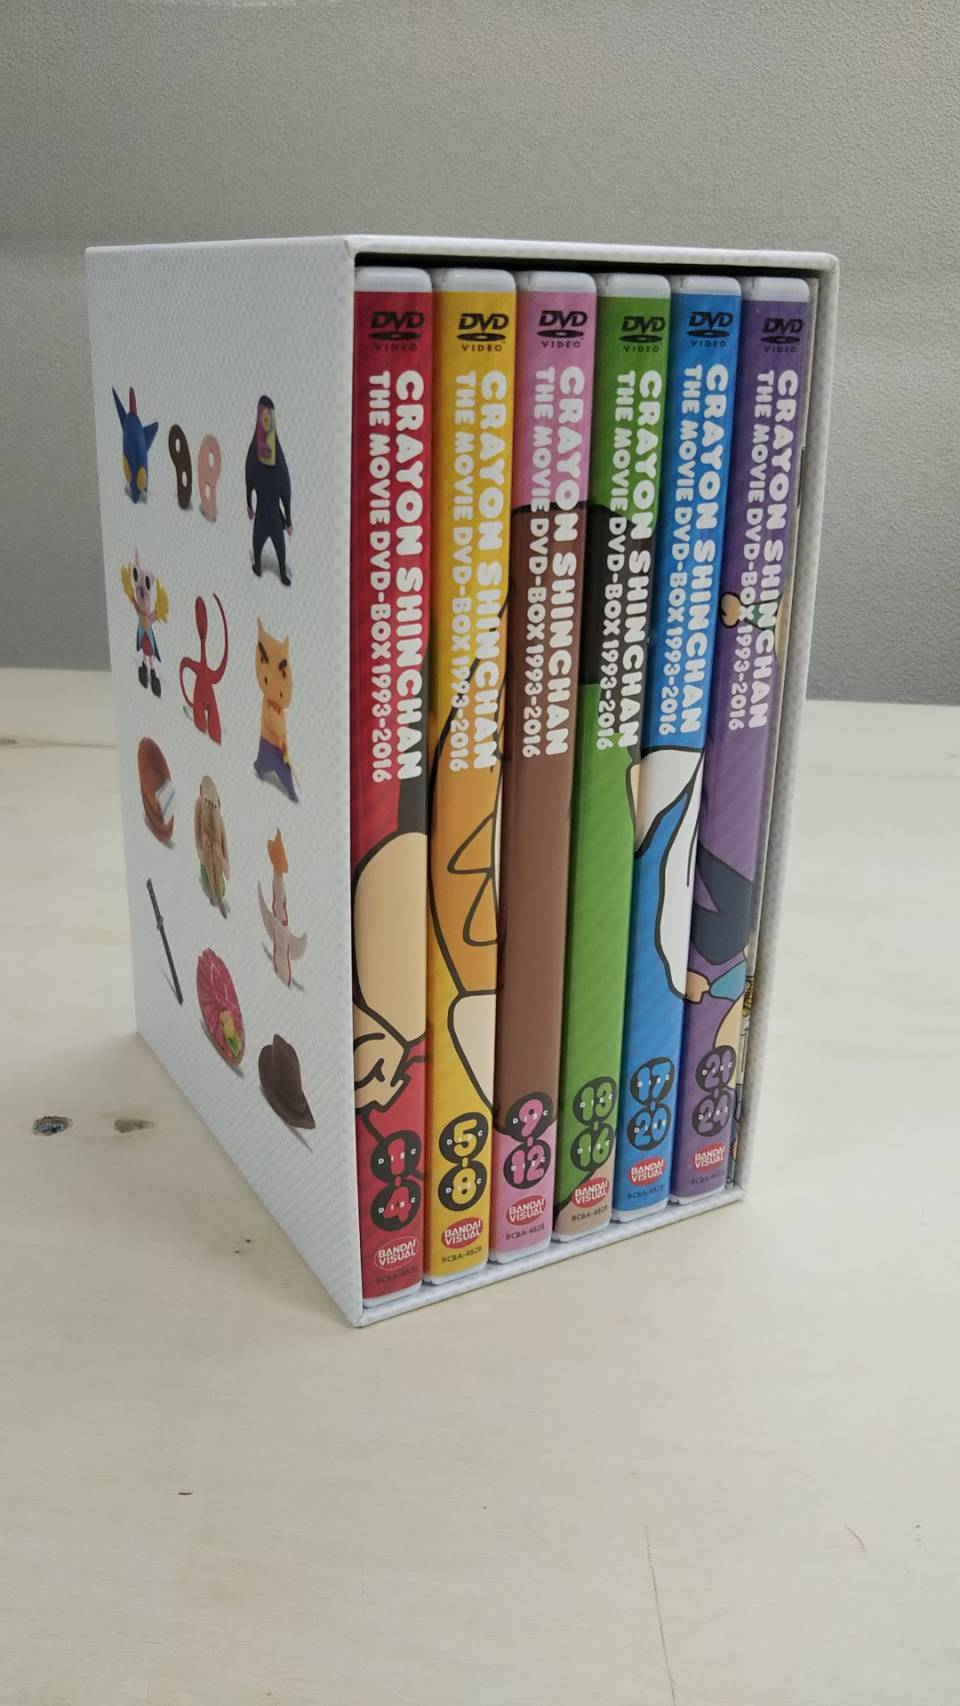 国内認定代理店 映画クレヨンしんちゃん DVD-BOX 1993-2016 アニメ